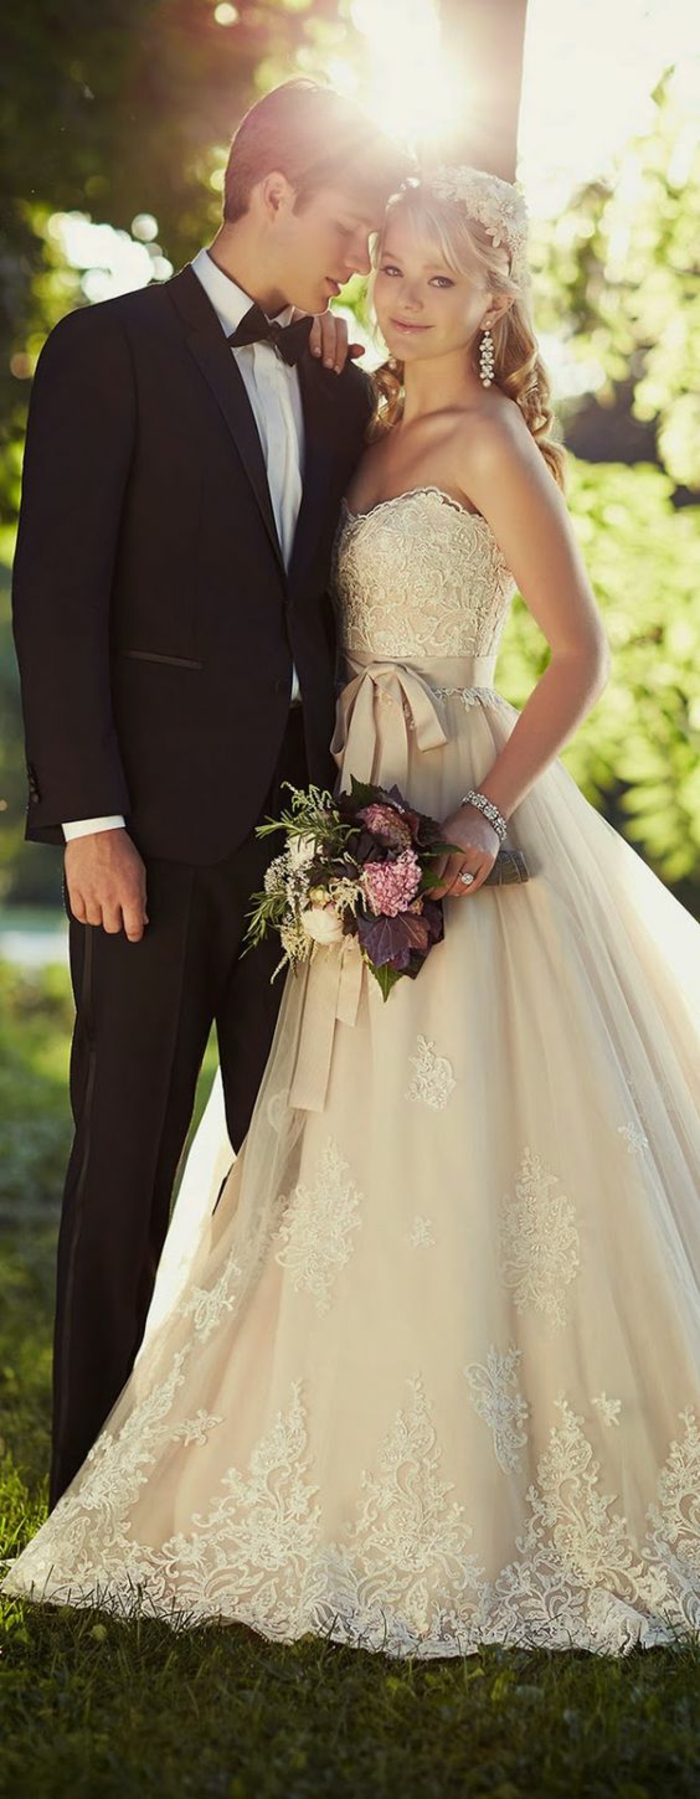 κοστούμι-με-fly-για-γάμο-φθορά στην αγάπη, ζευγάρι-νύφη-και-γαμπρός γαμήλια γιορτή, φιλί